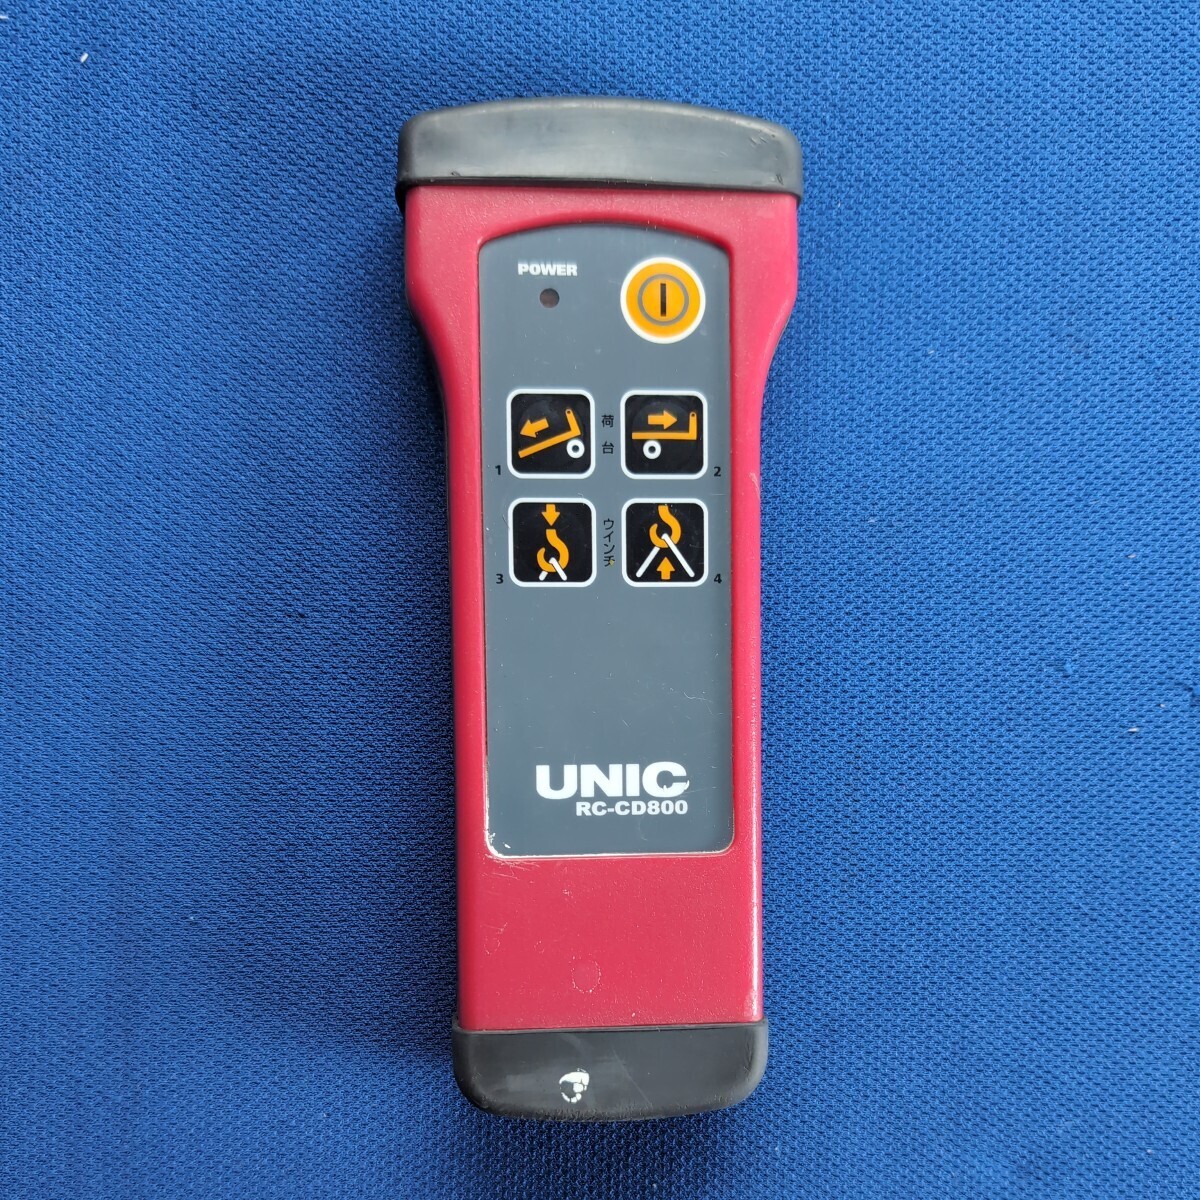 リモコン UNIC 積載車 古河ユニック ラジコン送信機 ユニック ラジコン_画像1